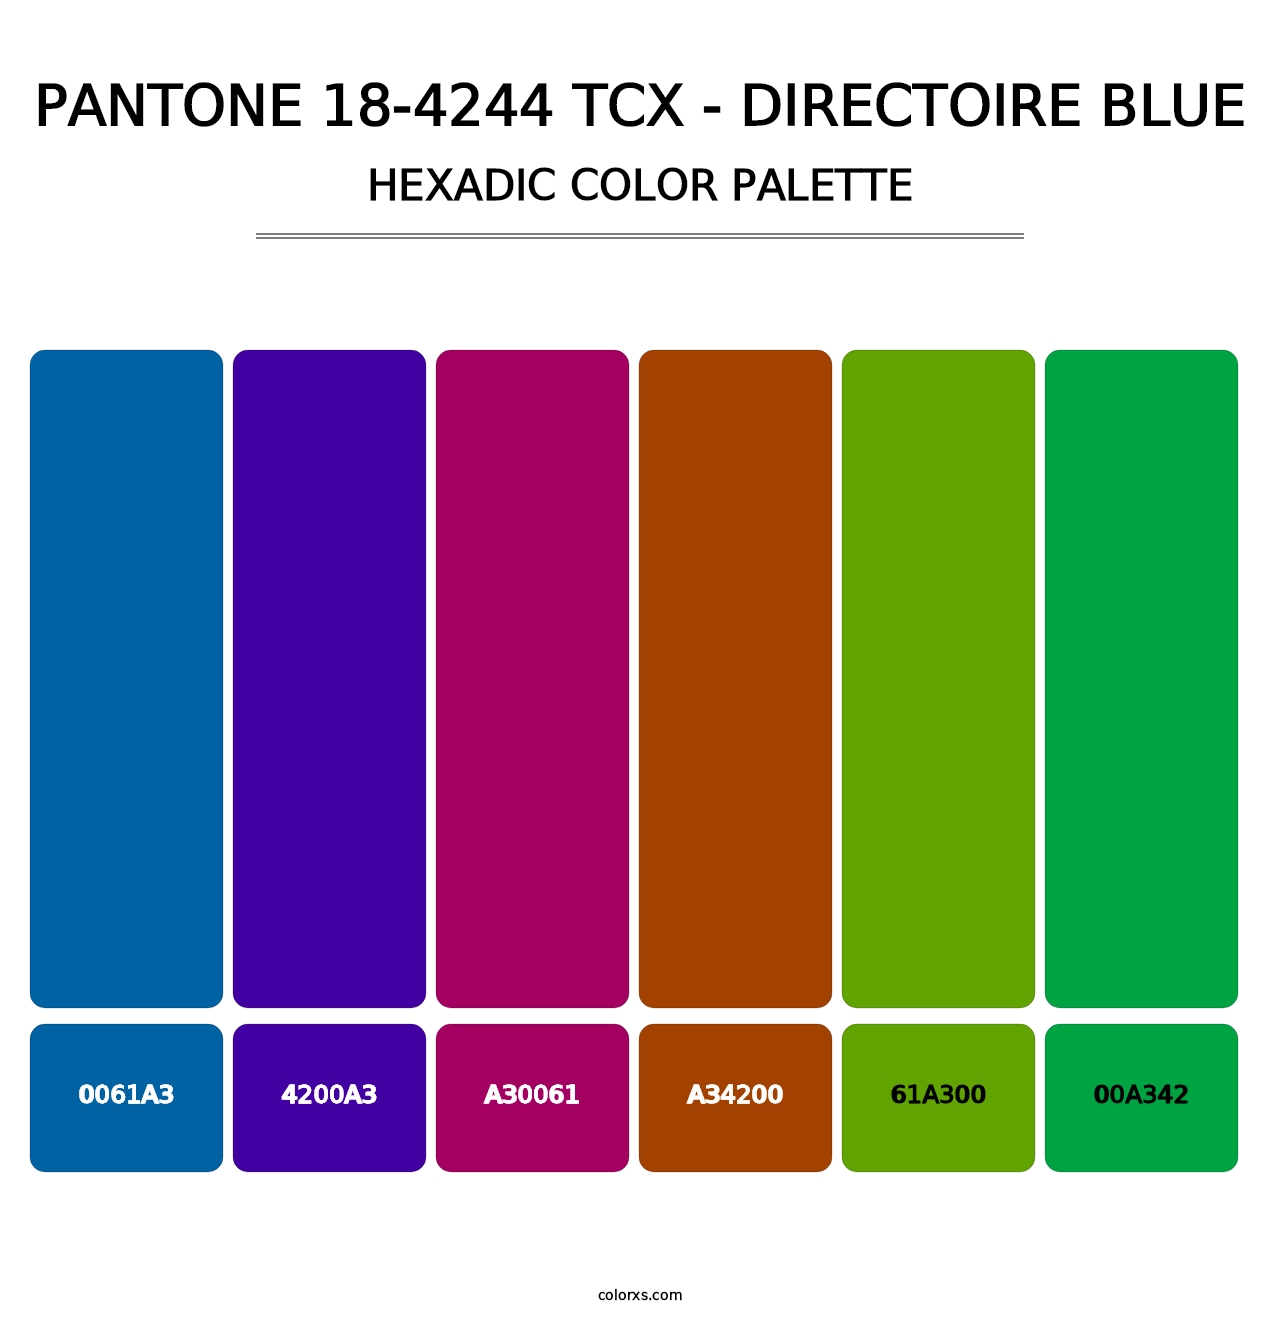 PANTONE 18-4244 TCX - Directoire Blue - Hexadic Color Palette